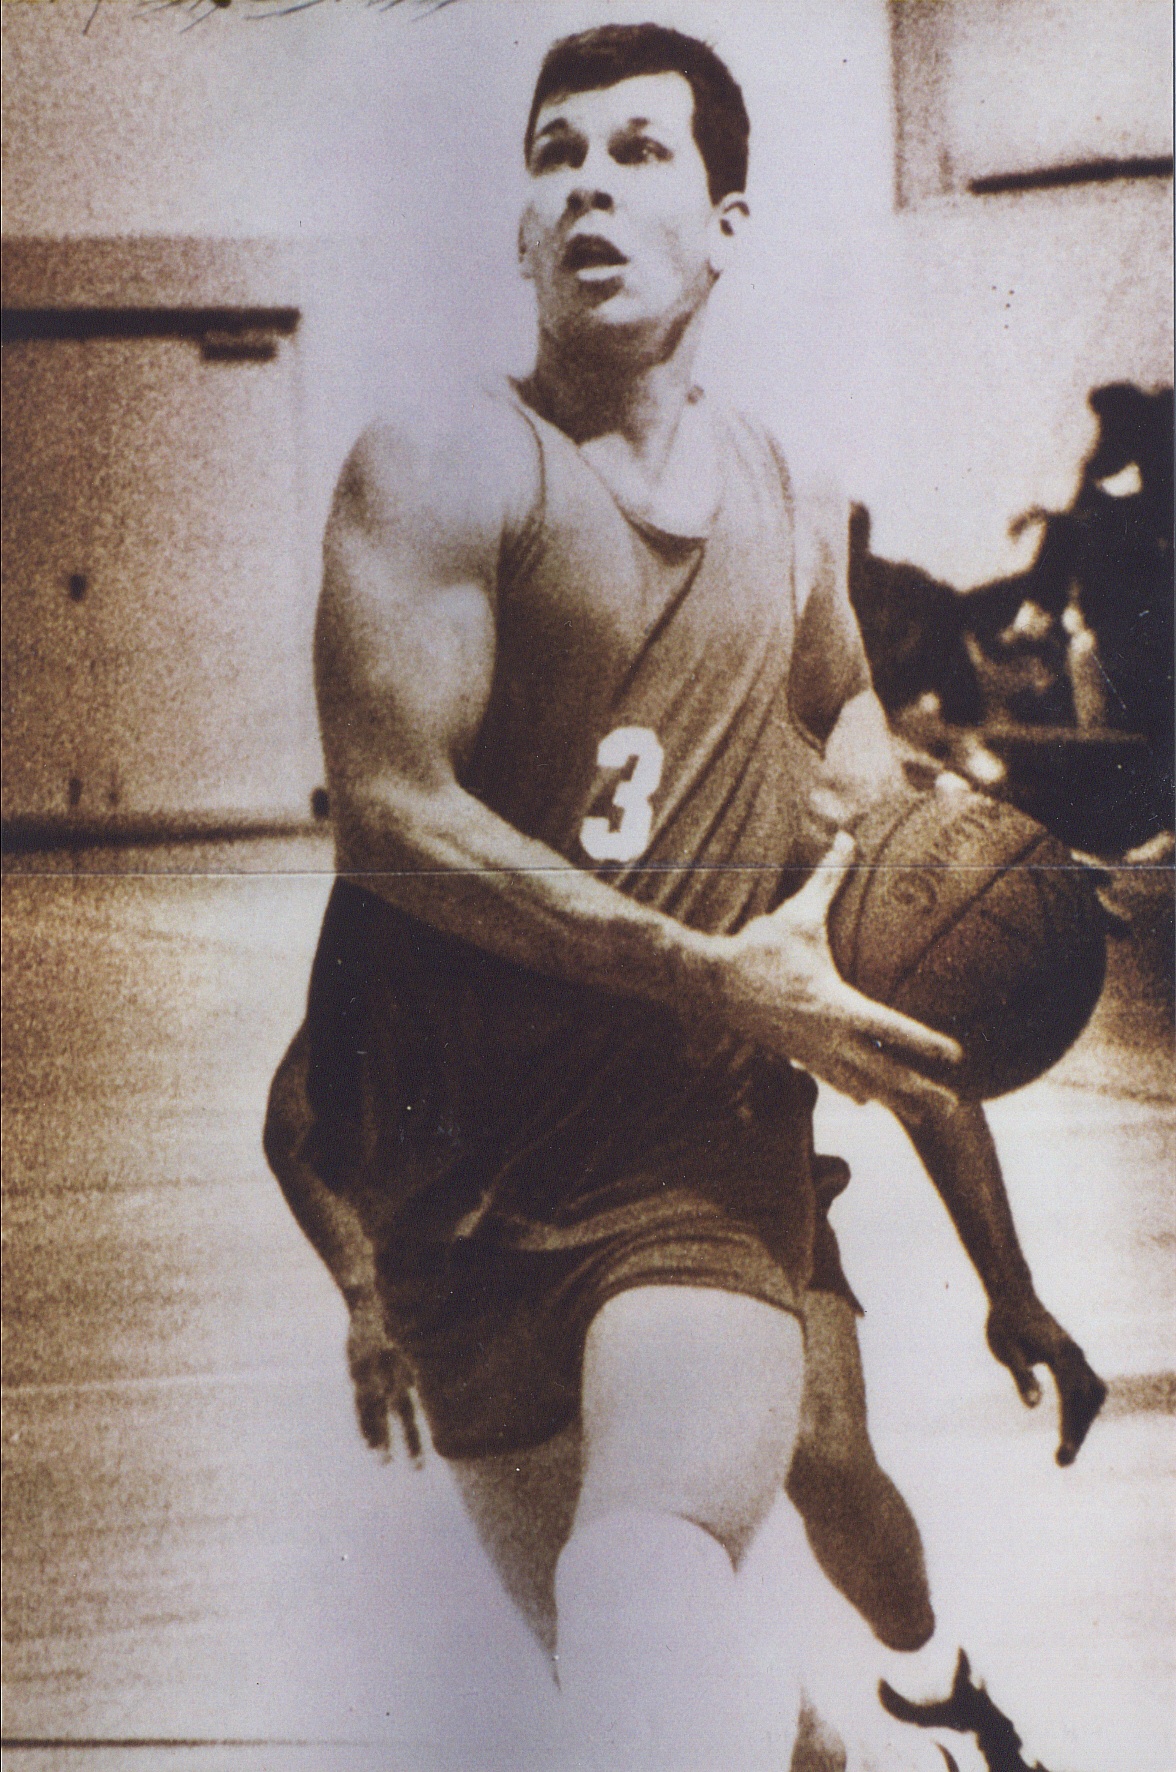 Basketball legend Thumper Newman